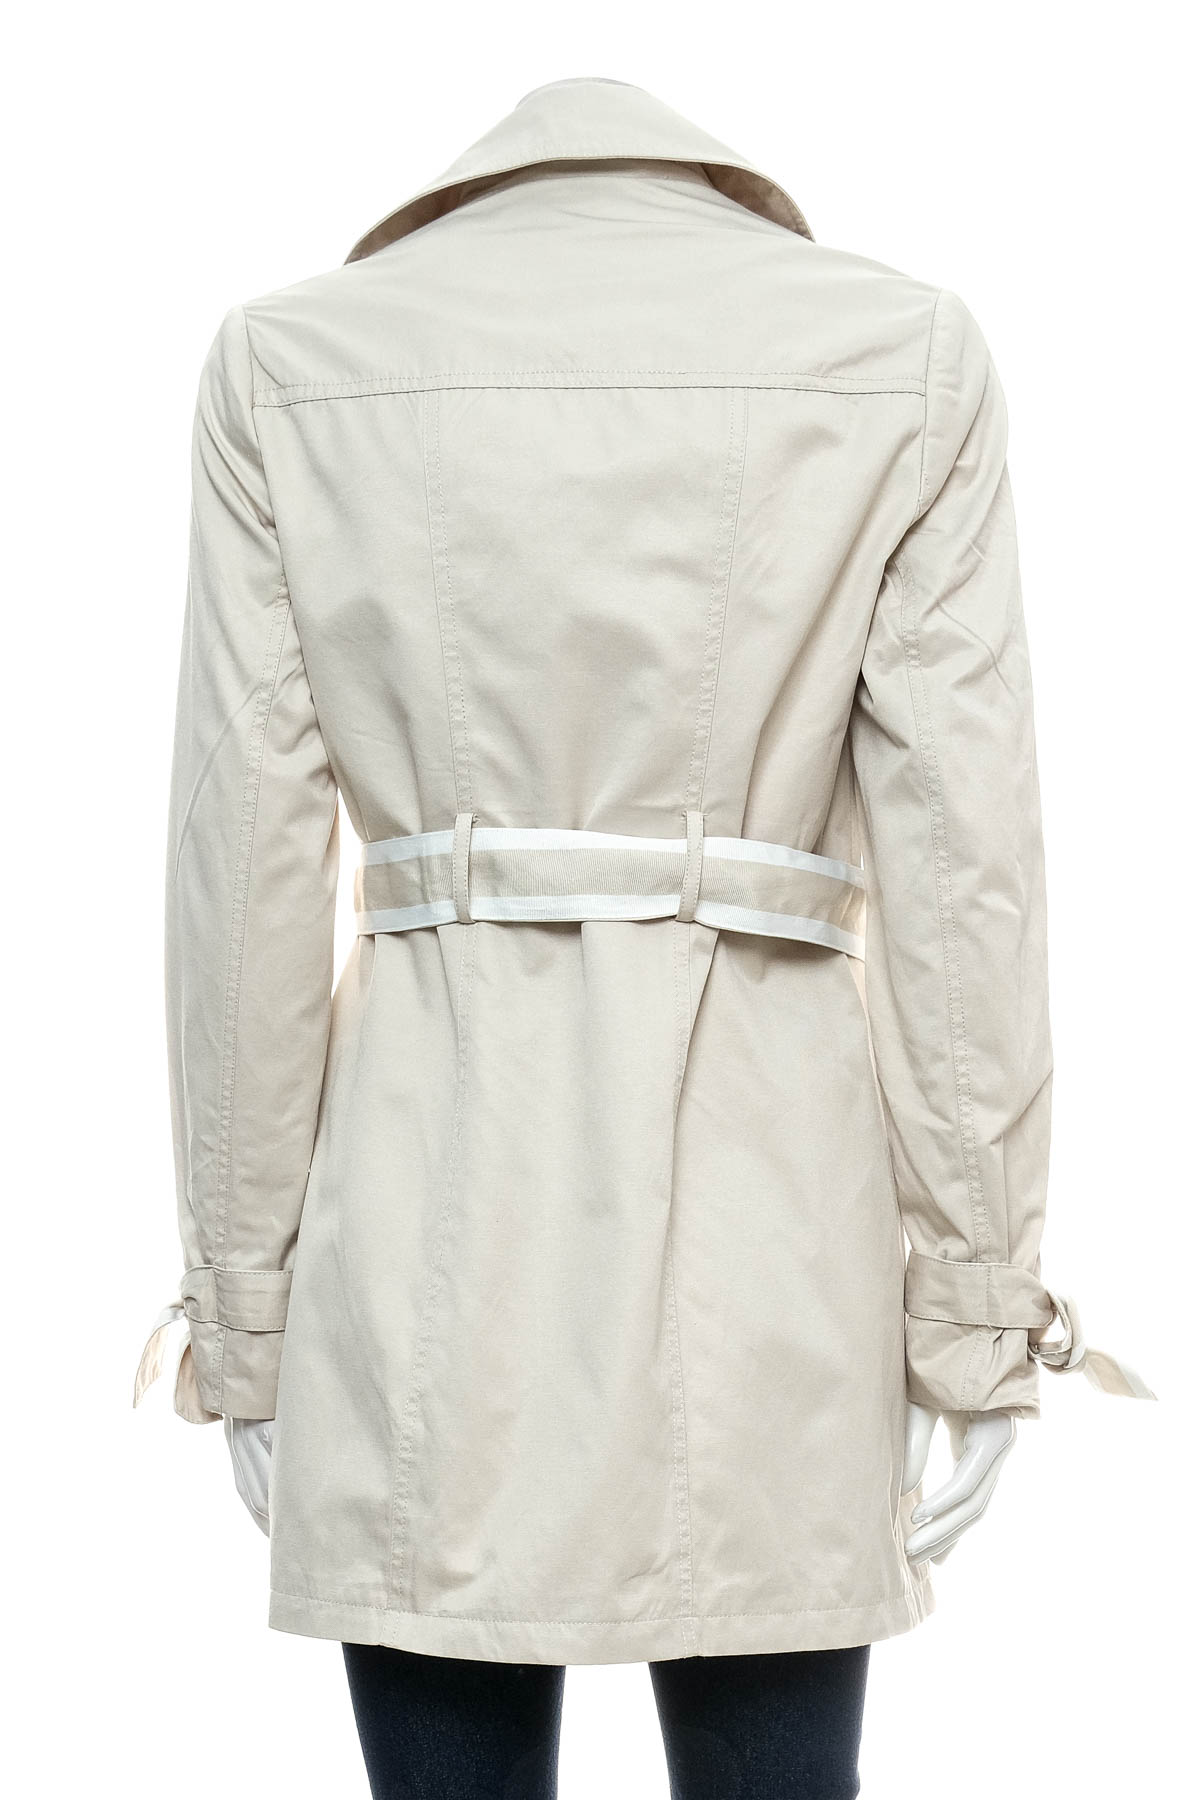 Γυναικείο παλτό - Orsay - 1